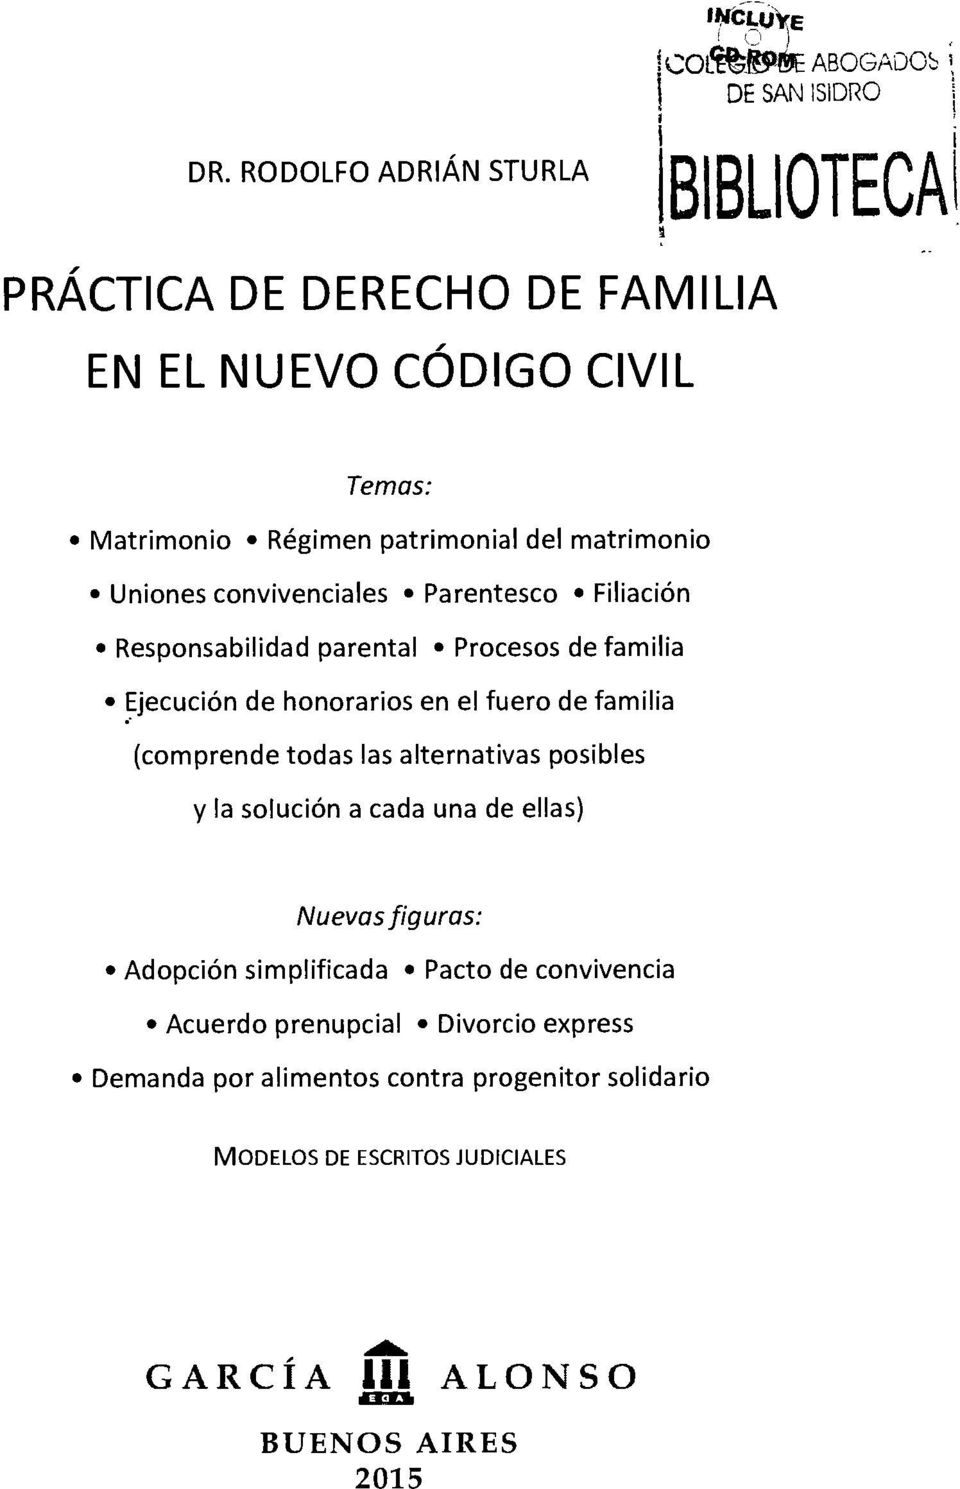 DR. RODOLFO ADRIÁN STURLA PRÁCTICA DE DERECHO DE FAMILIA EN EL NUEVO CÓDIGO  CIVIL. Temas: Matrimonio Régimen patrimonial del matrimonio - PDF Descargar  libre